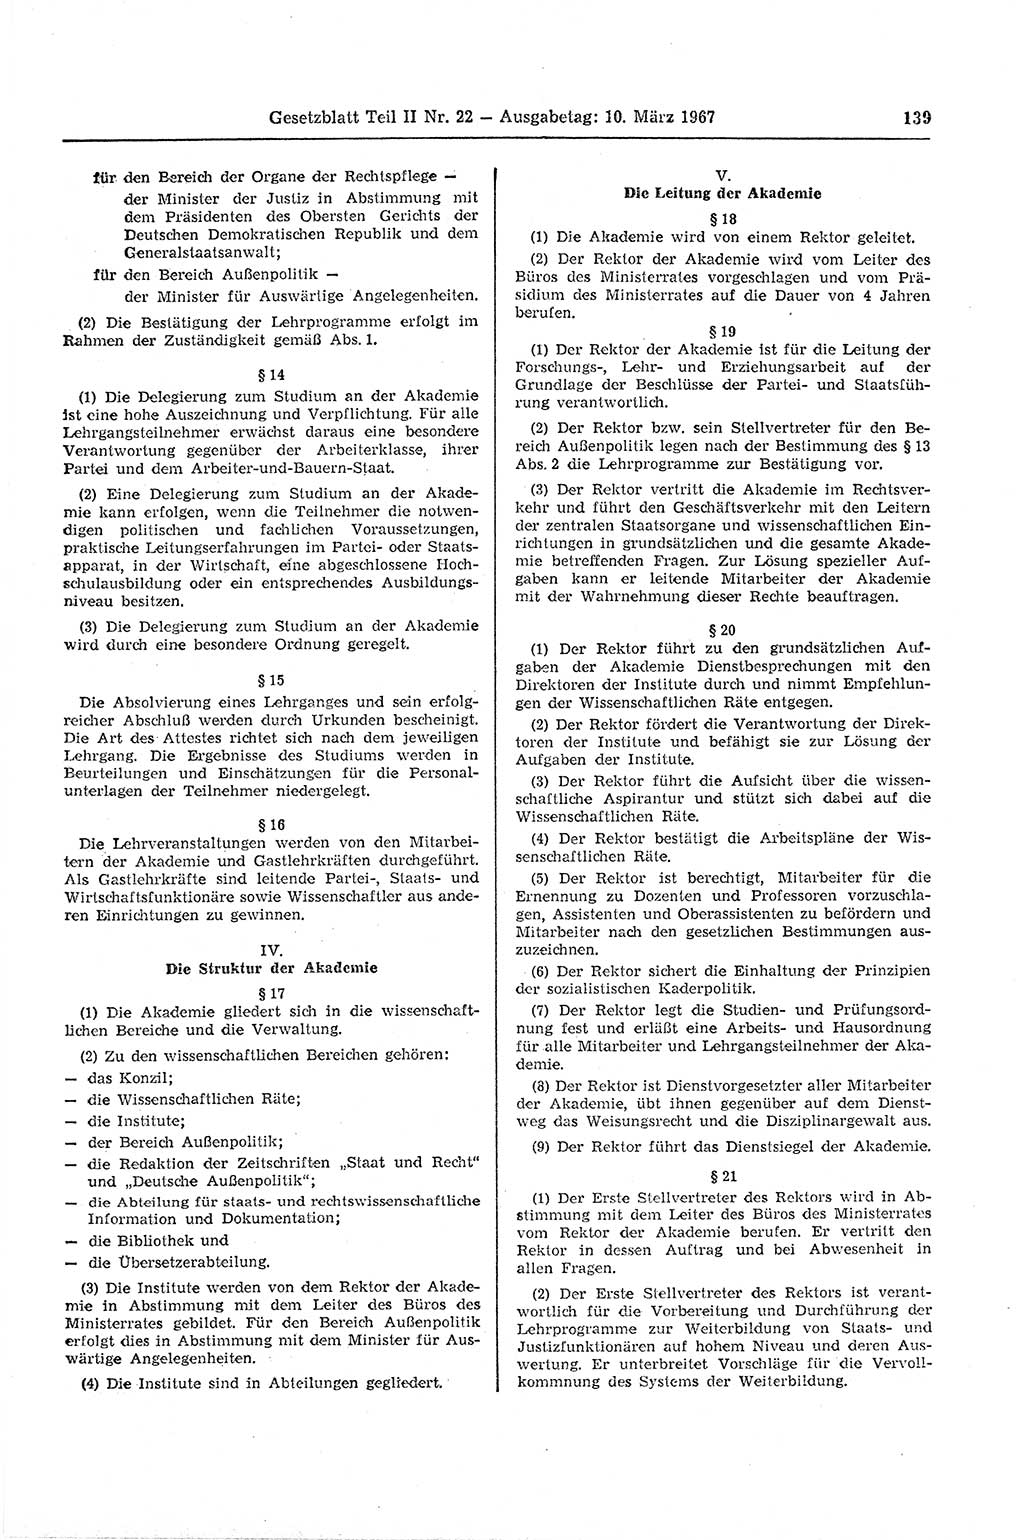 Gesetzblatt (GBl.) der Deutschen Demokratischen Republik (DDR) Teil ⅠⅠ 1967, Seite 139 (GBl. DDR ⅠⅠ 1967, S. 139)